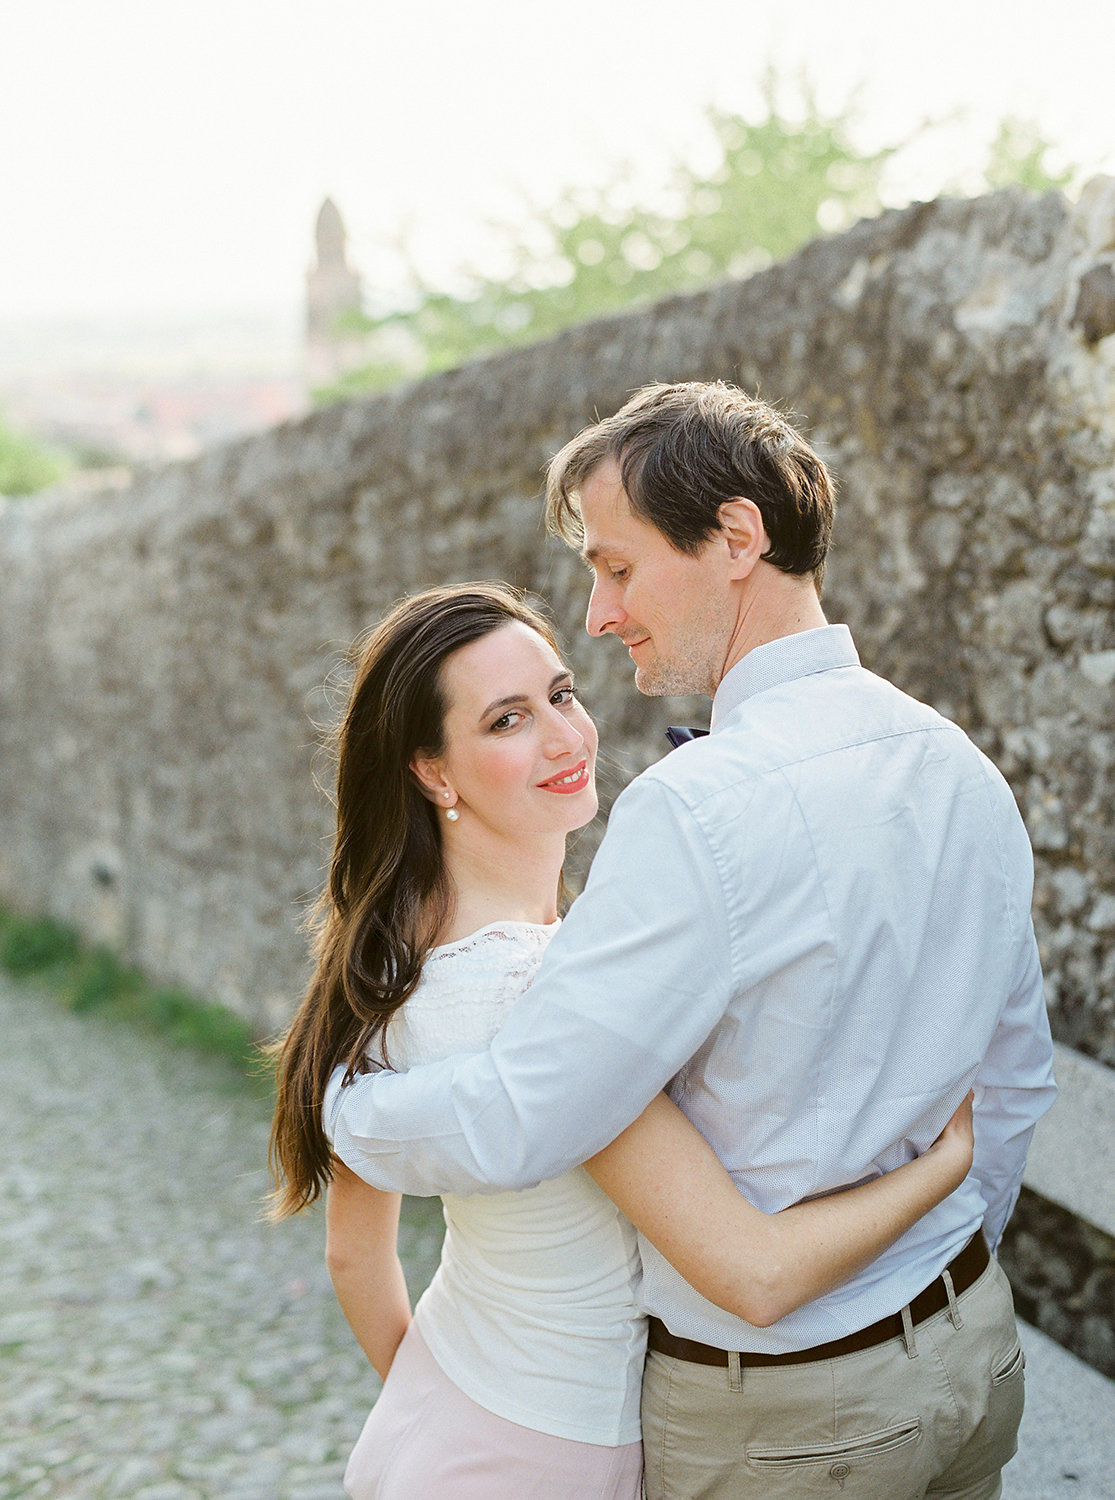 Zásnuby v Itálii, svatební fotografie Nikol Bodnárová na blogu Originální Svatba